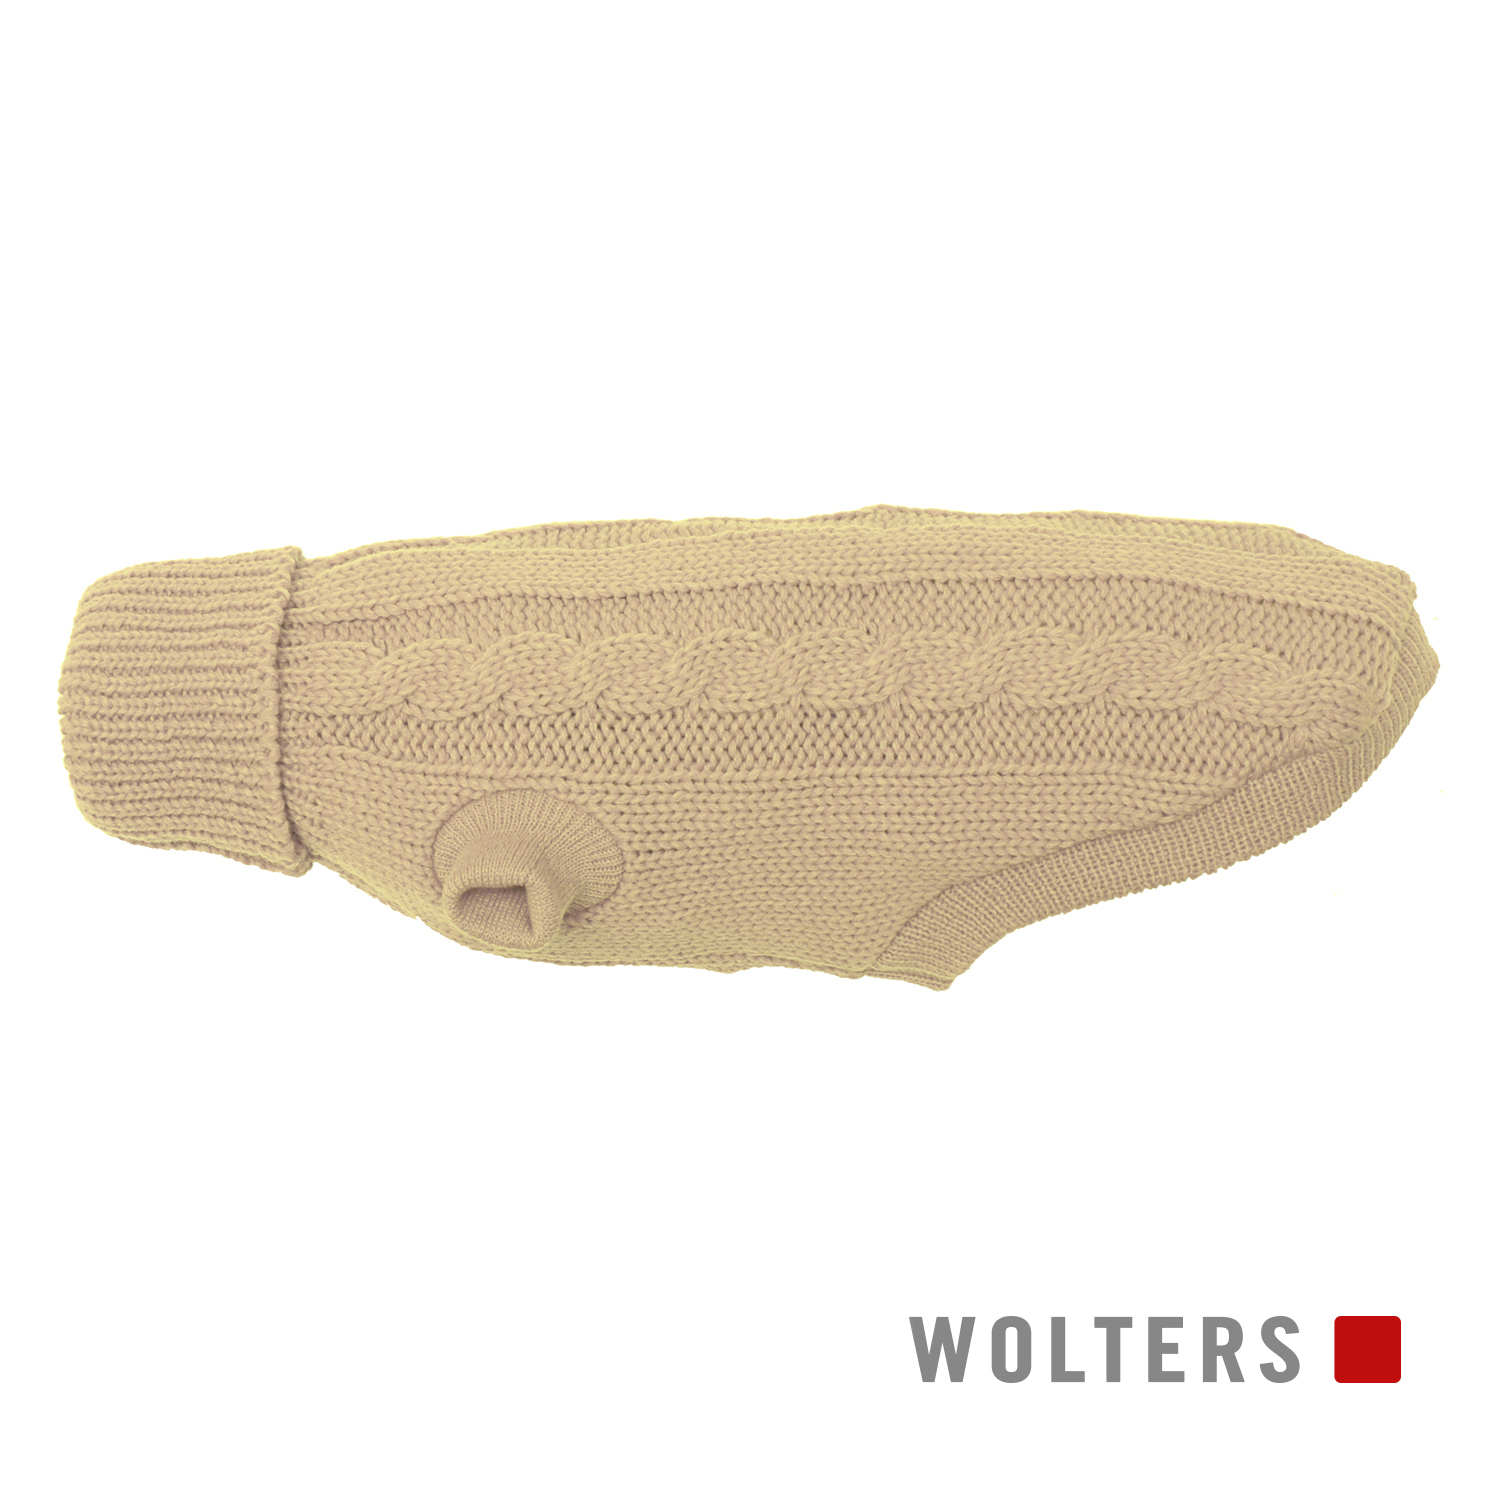 Wolters Zopf-Strickpullover Beige 35 cm